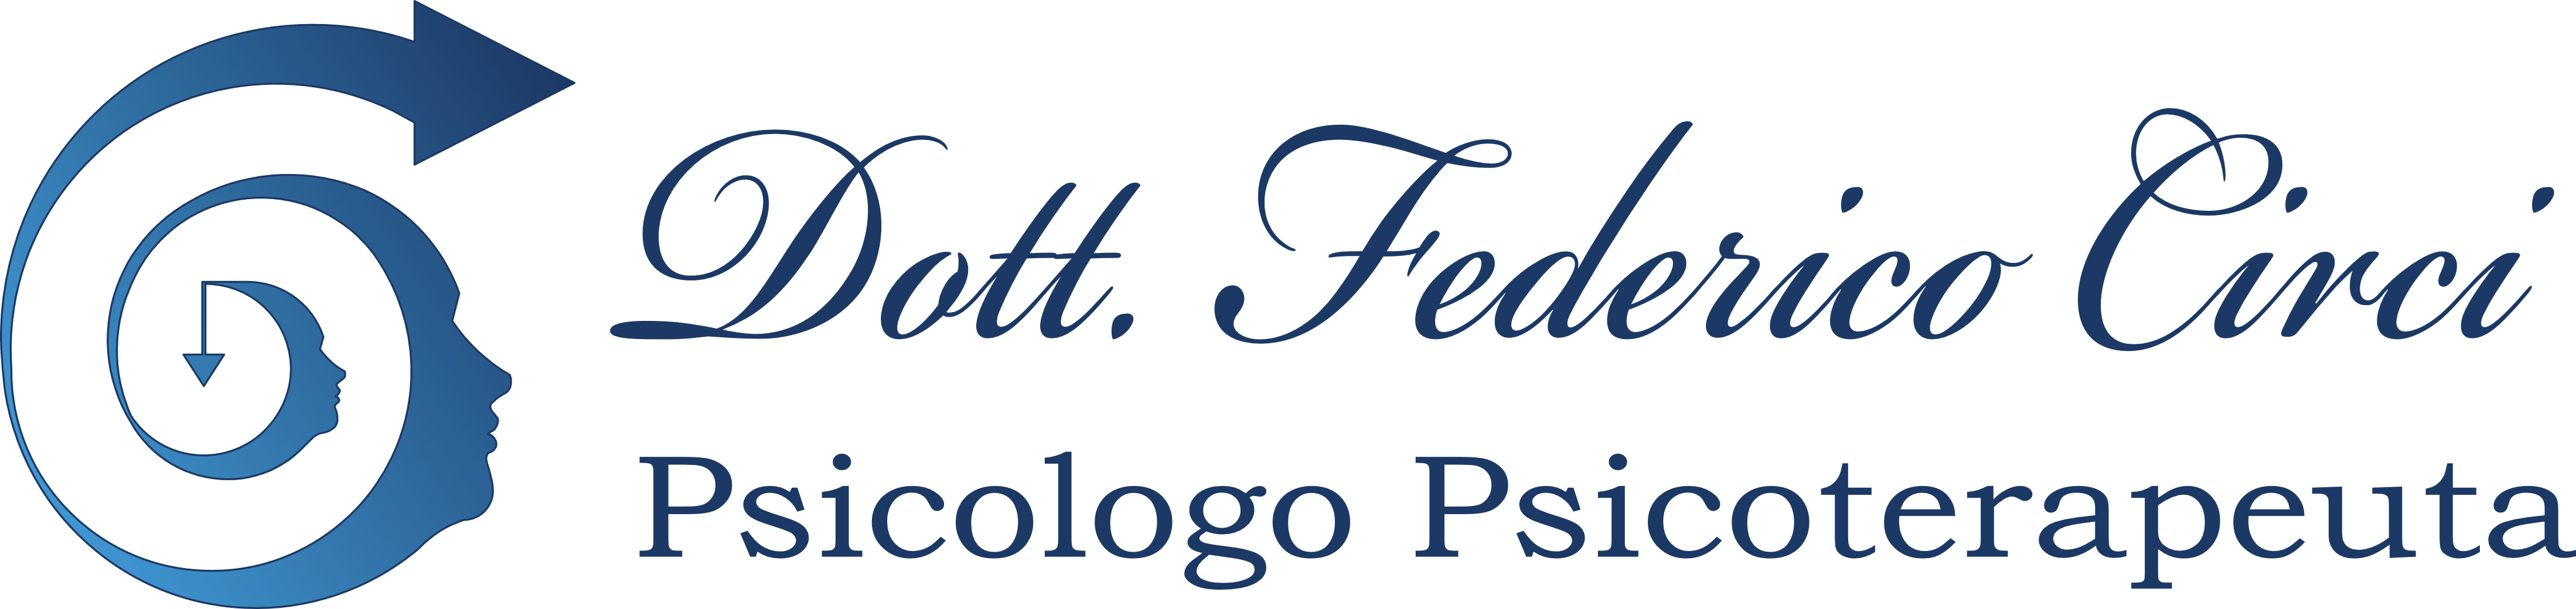 Federico Circi | Psicologo Psicoterapeuta